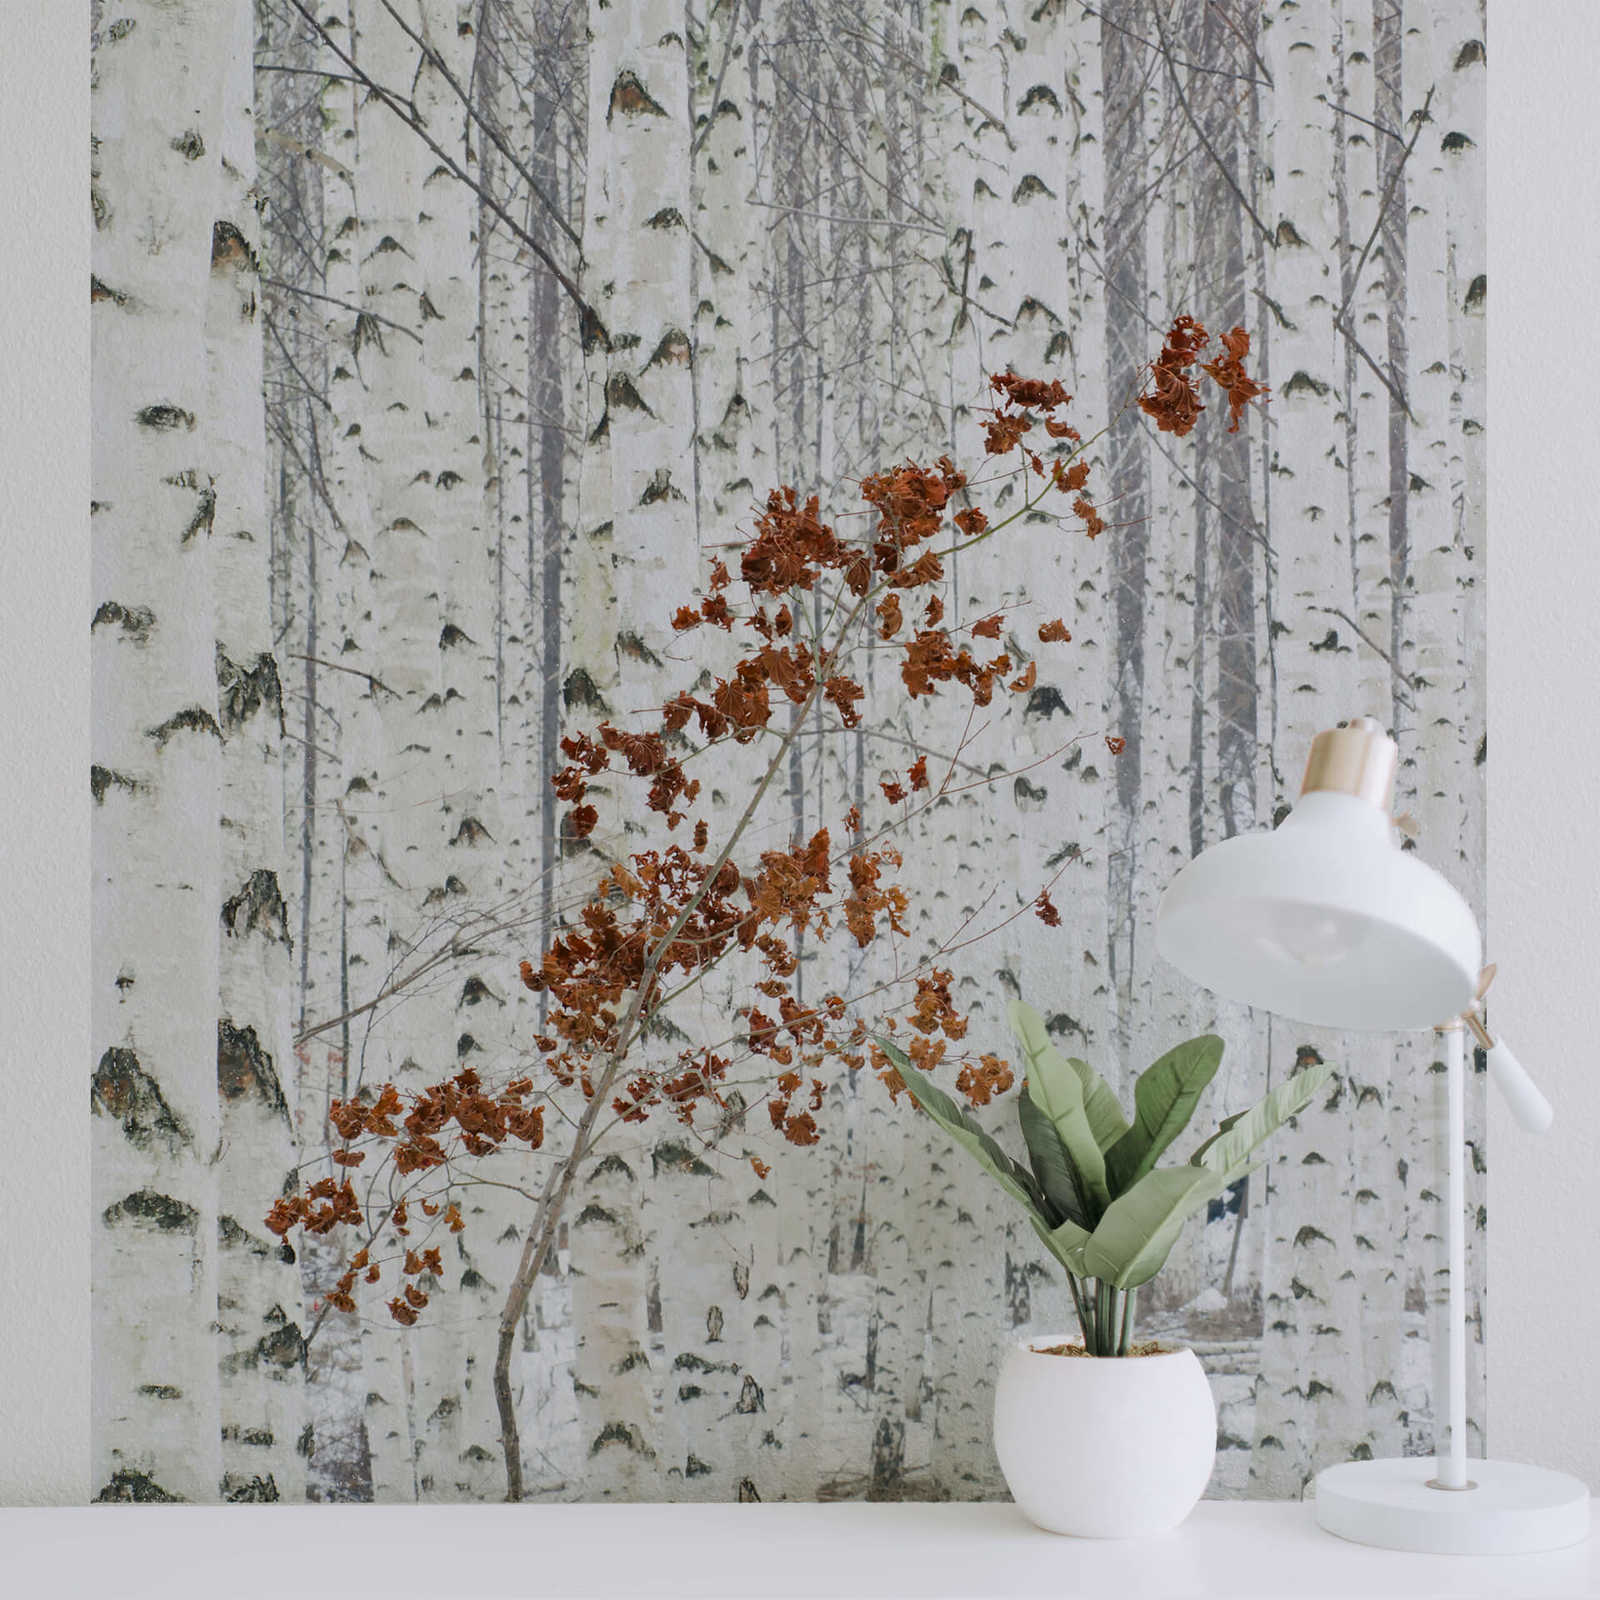             Papier peint panoramique forêt de bouleaux - blanc, gris, marron
        